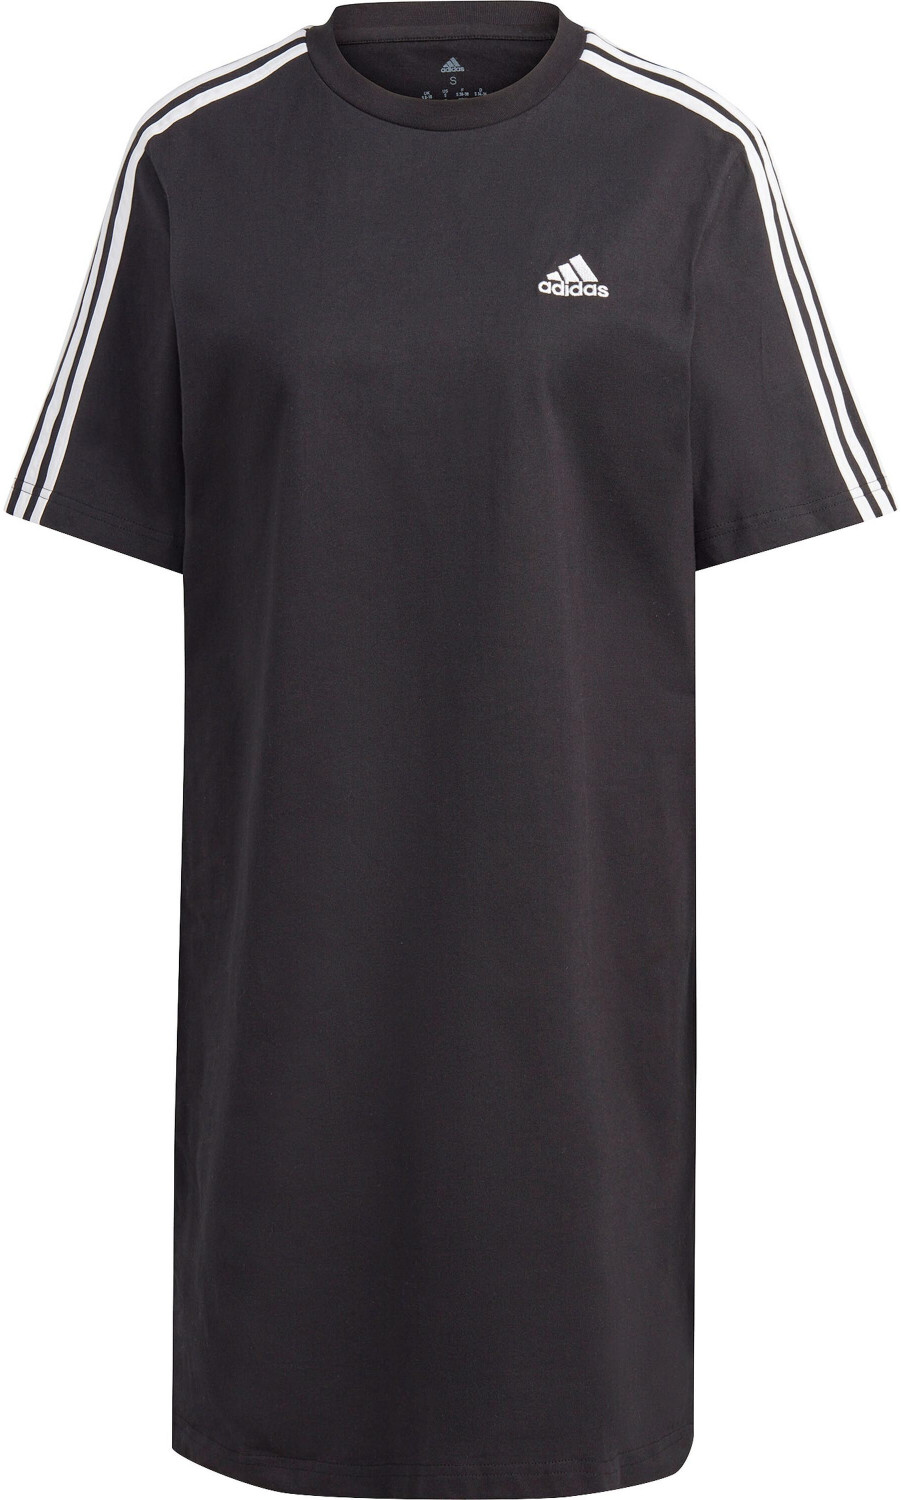 | € Essentials Adidas Dress T-Shirt Preisvergleich Boyfriend Jersey Single bei ab 3-Stripes 25,83